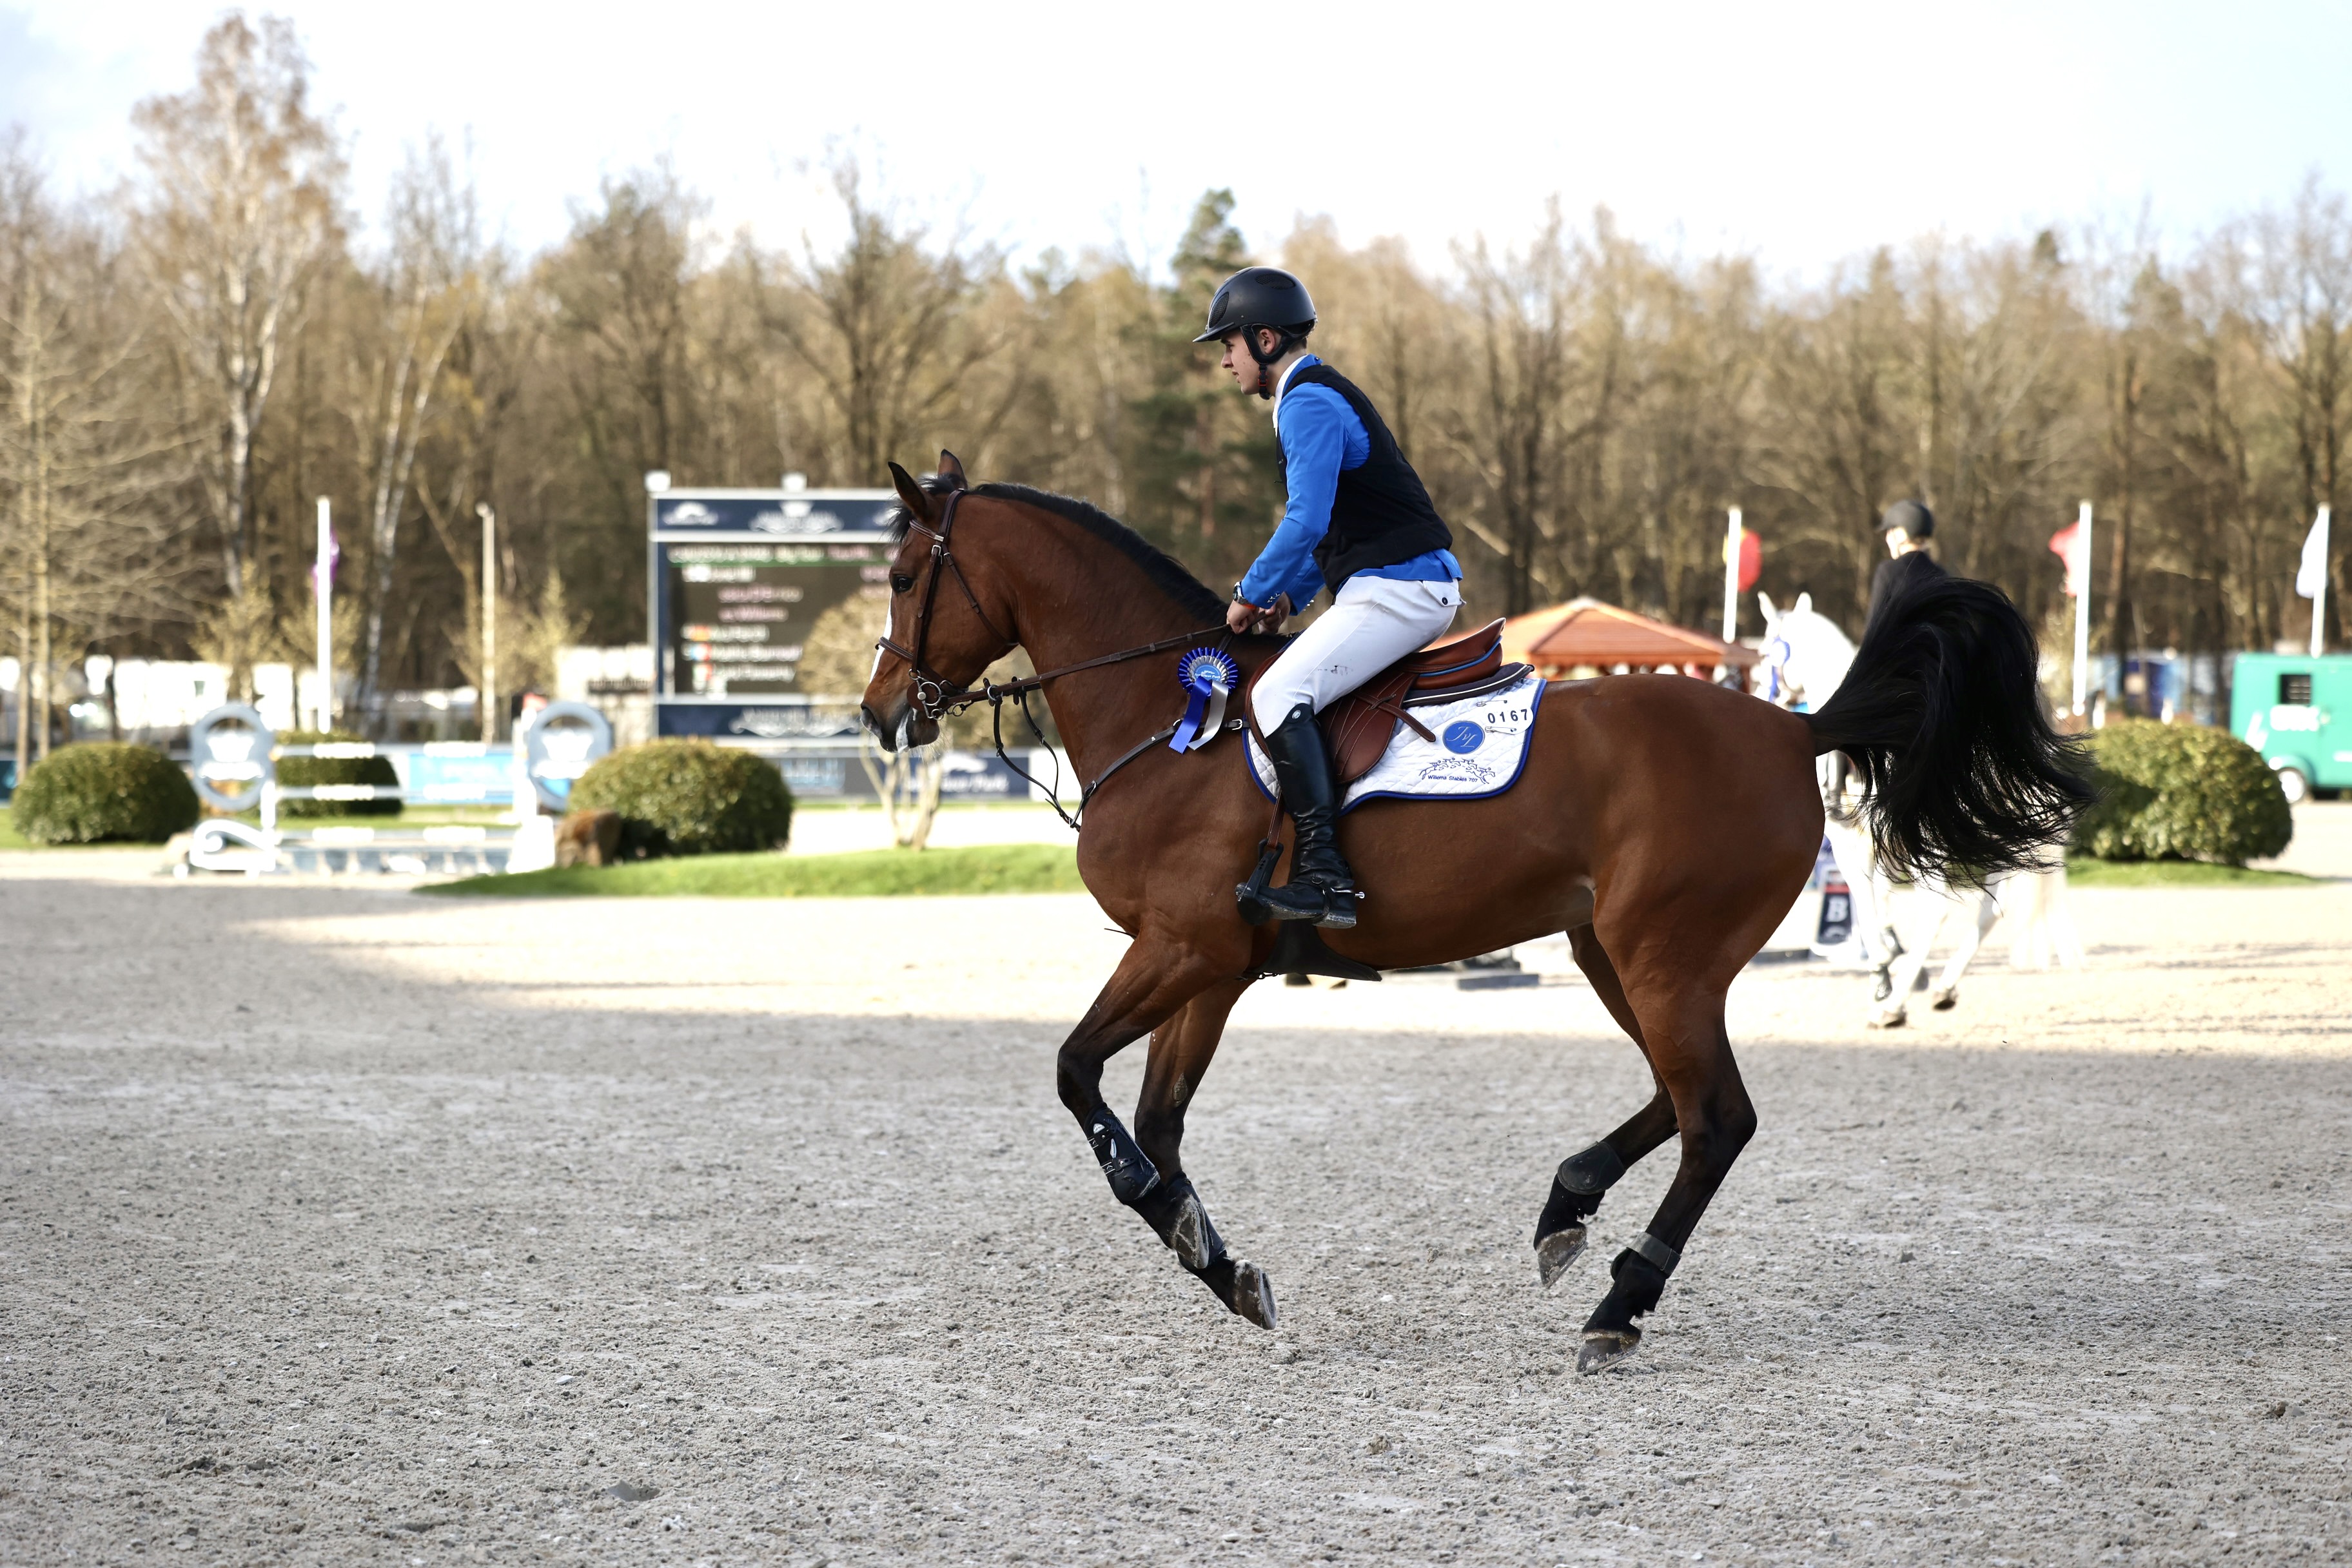 Yves Willems is Nederlandse afgevaardigde in Big Tour, Chloë Yacob beste bij de pony's